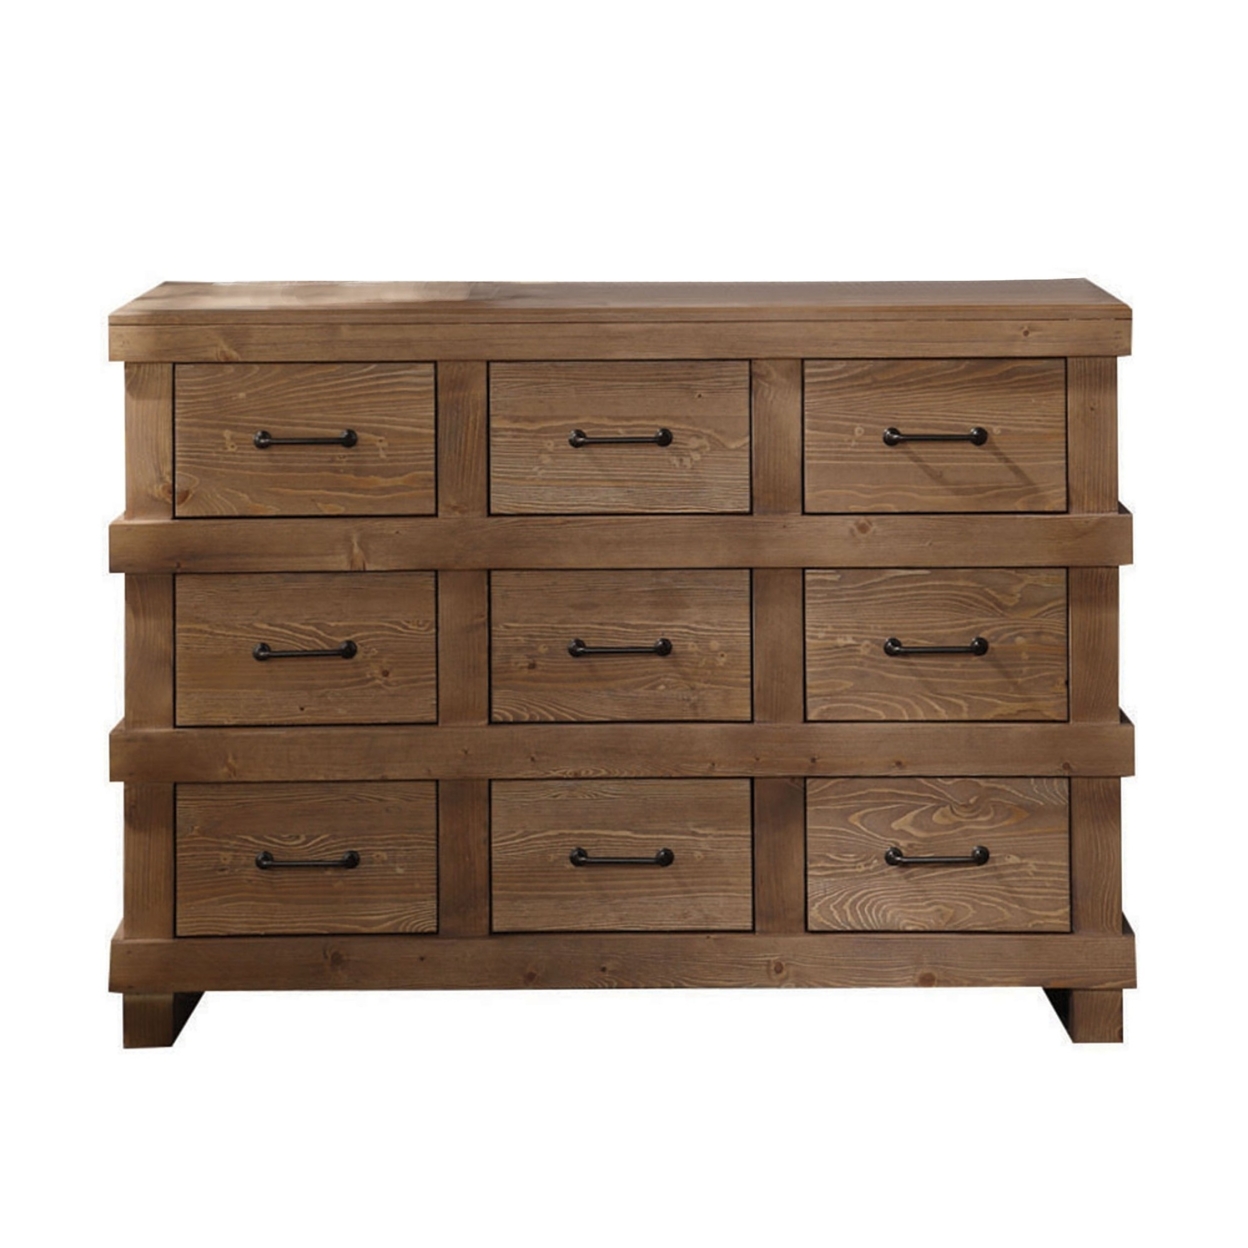 Capacious Wooden Dresser, Antique Oak- Saltoro Sherpi